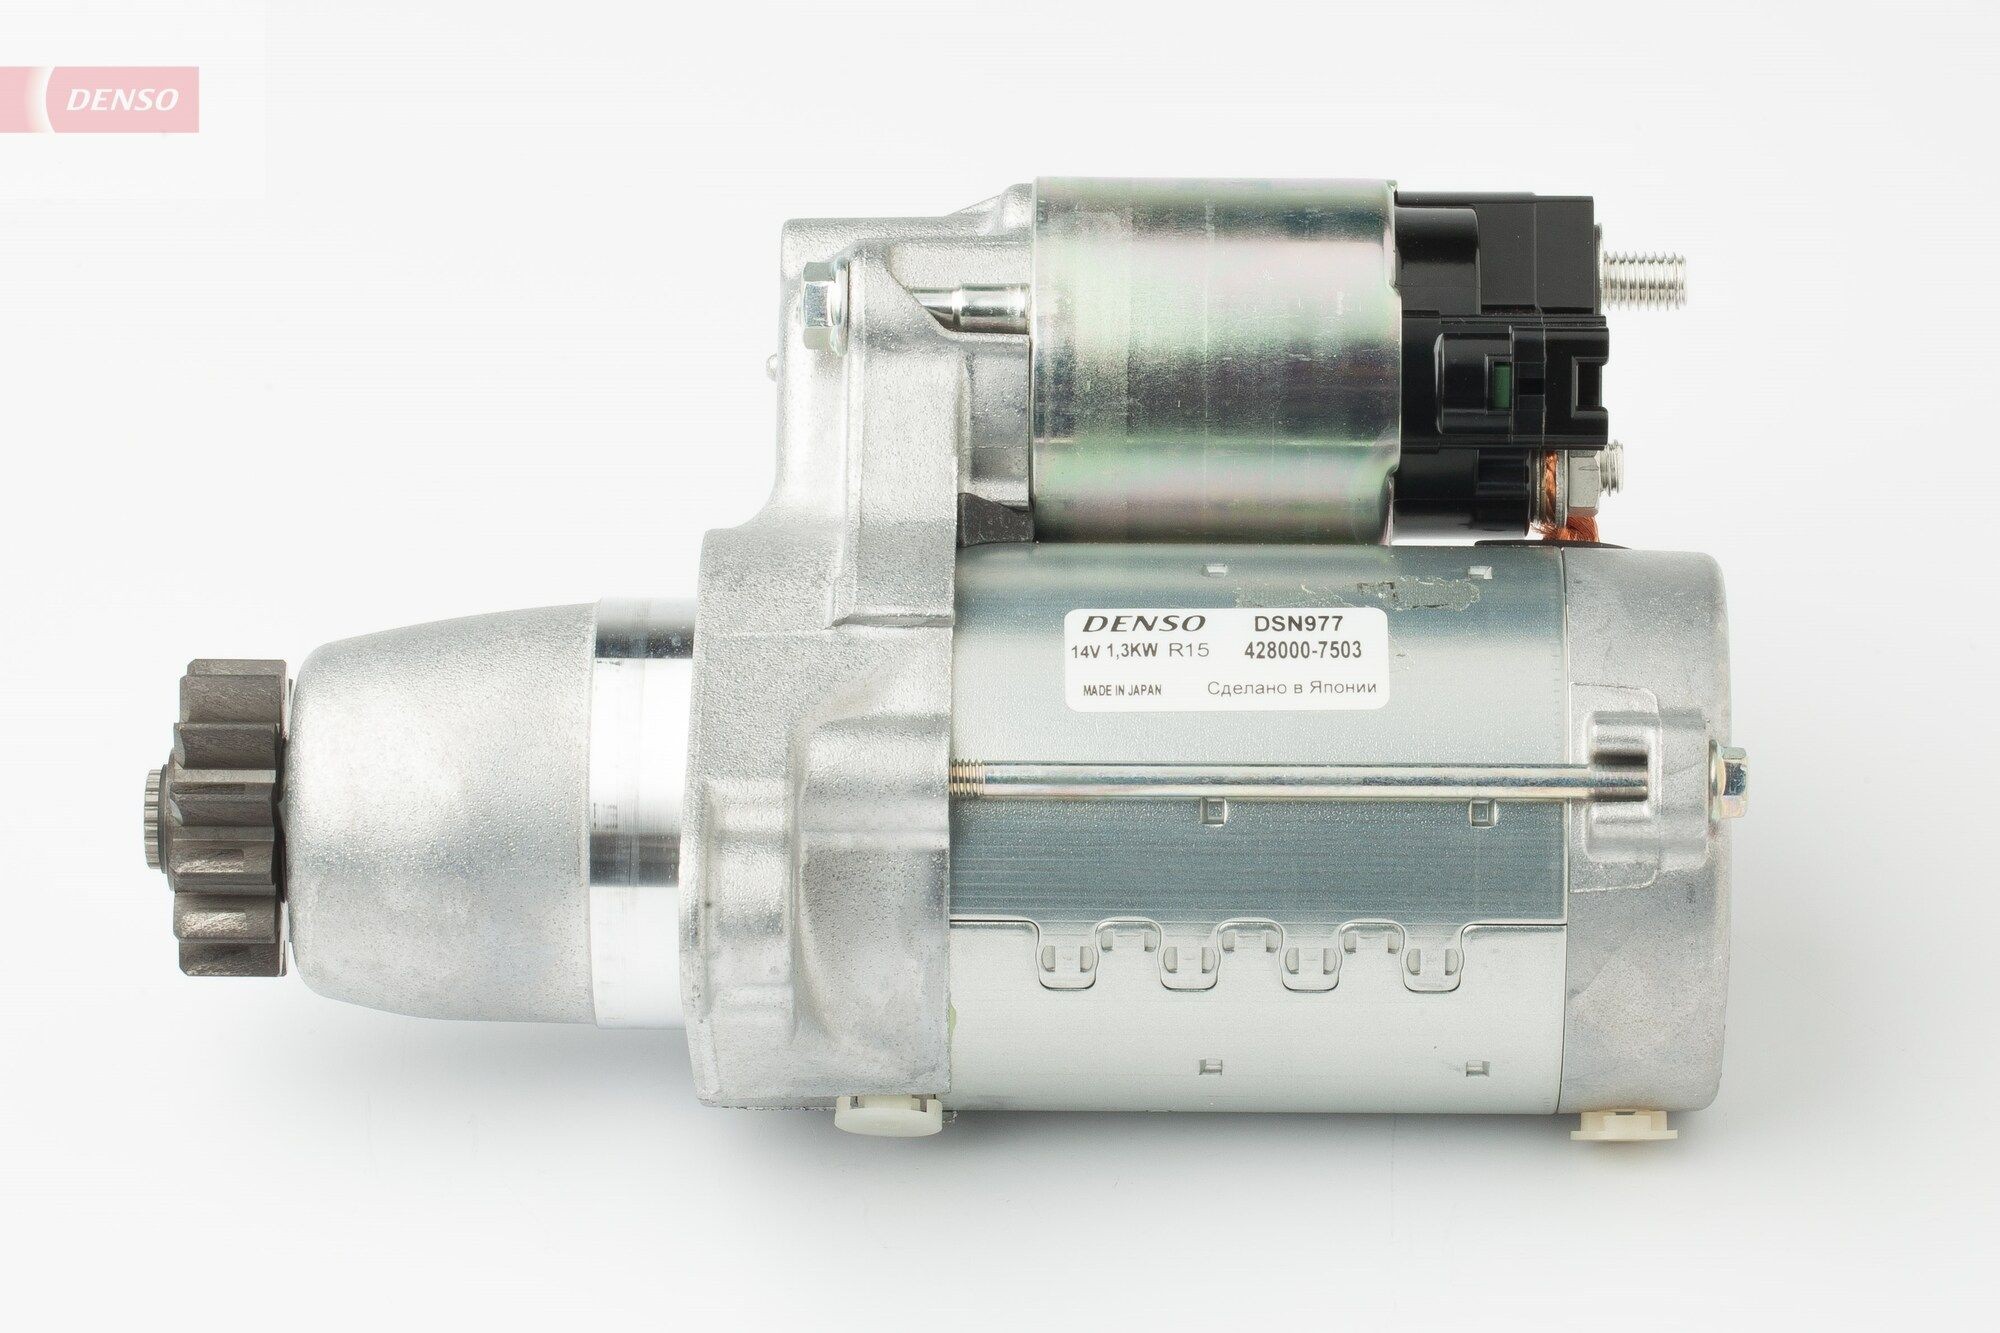 DENSO DSN977 Starter motor 28100-28082